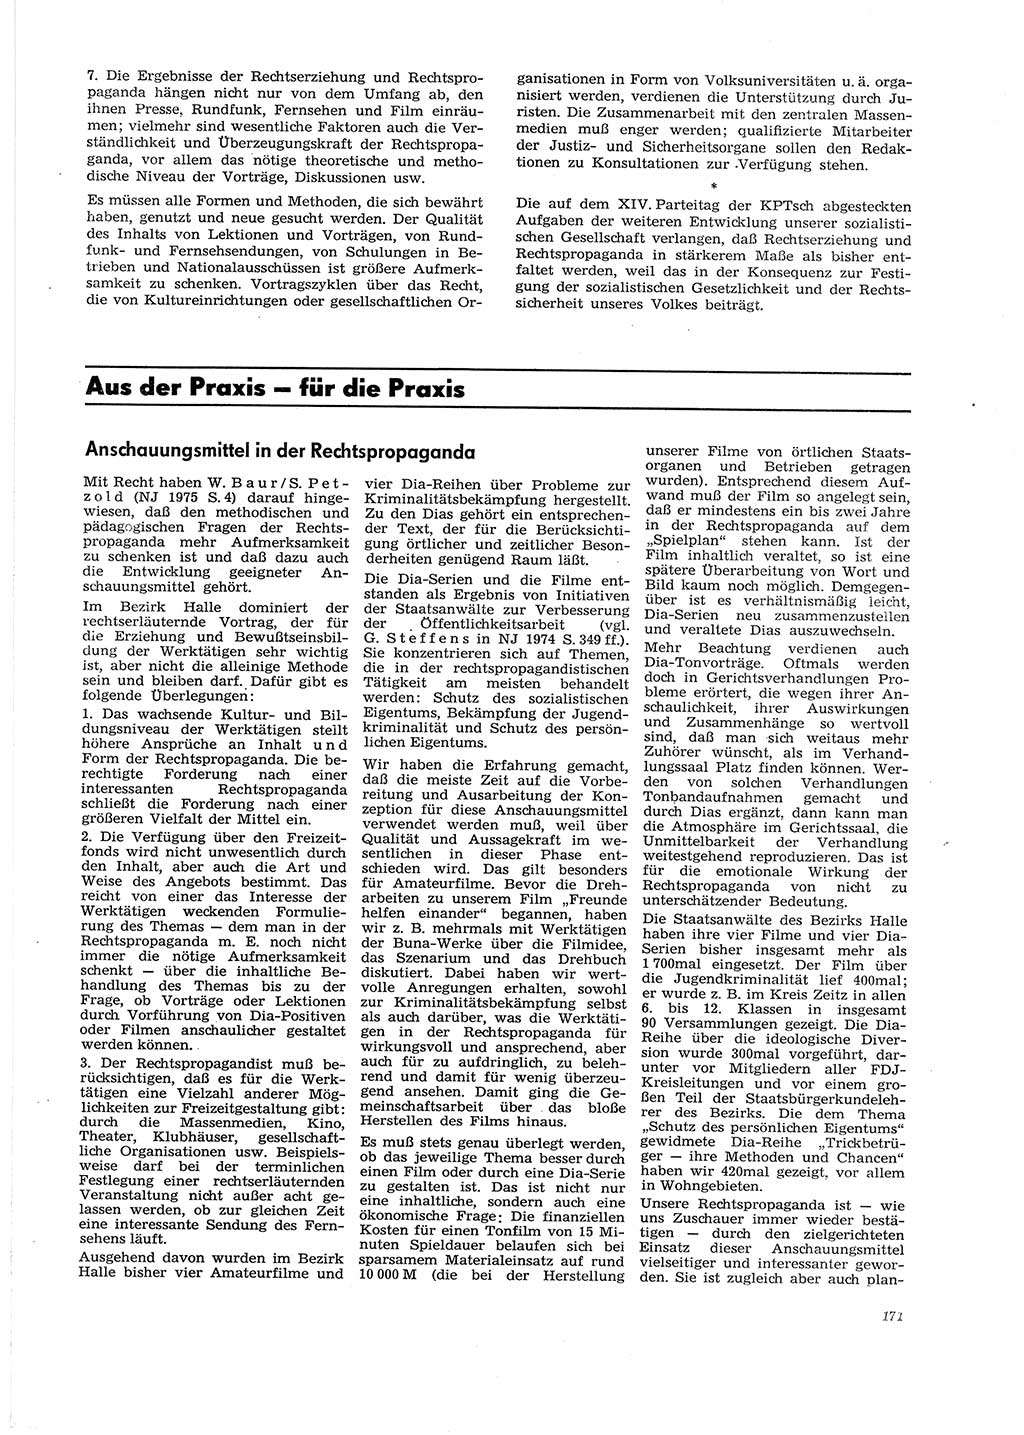 Neue Justiz (NJ), Zeitschrift für Recht und Rechtswissenschaft [Deutsche Demokratische Republik (DDR)], 29. Jahrgang 1975, Seite 171 (NJ DDR 1975, S. 171)